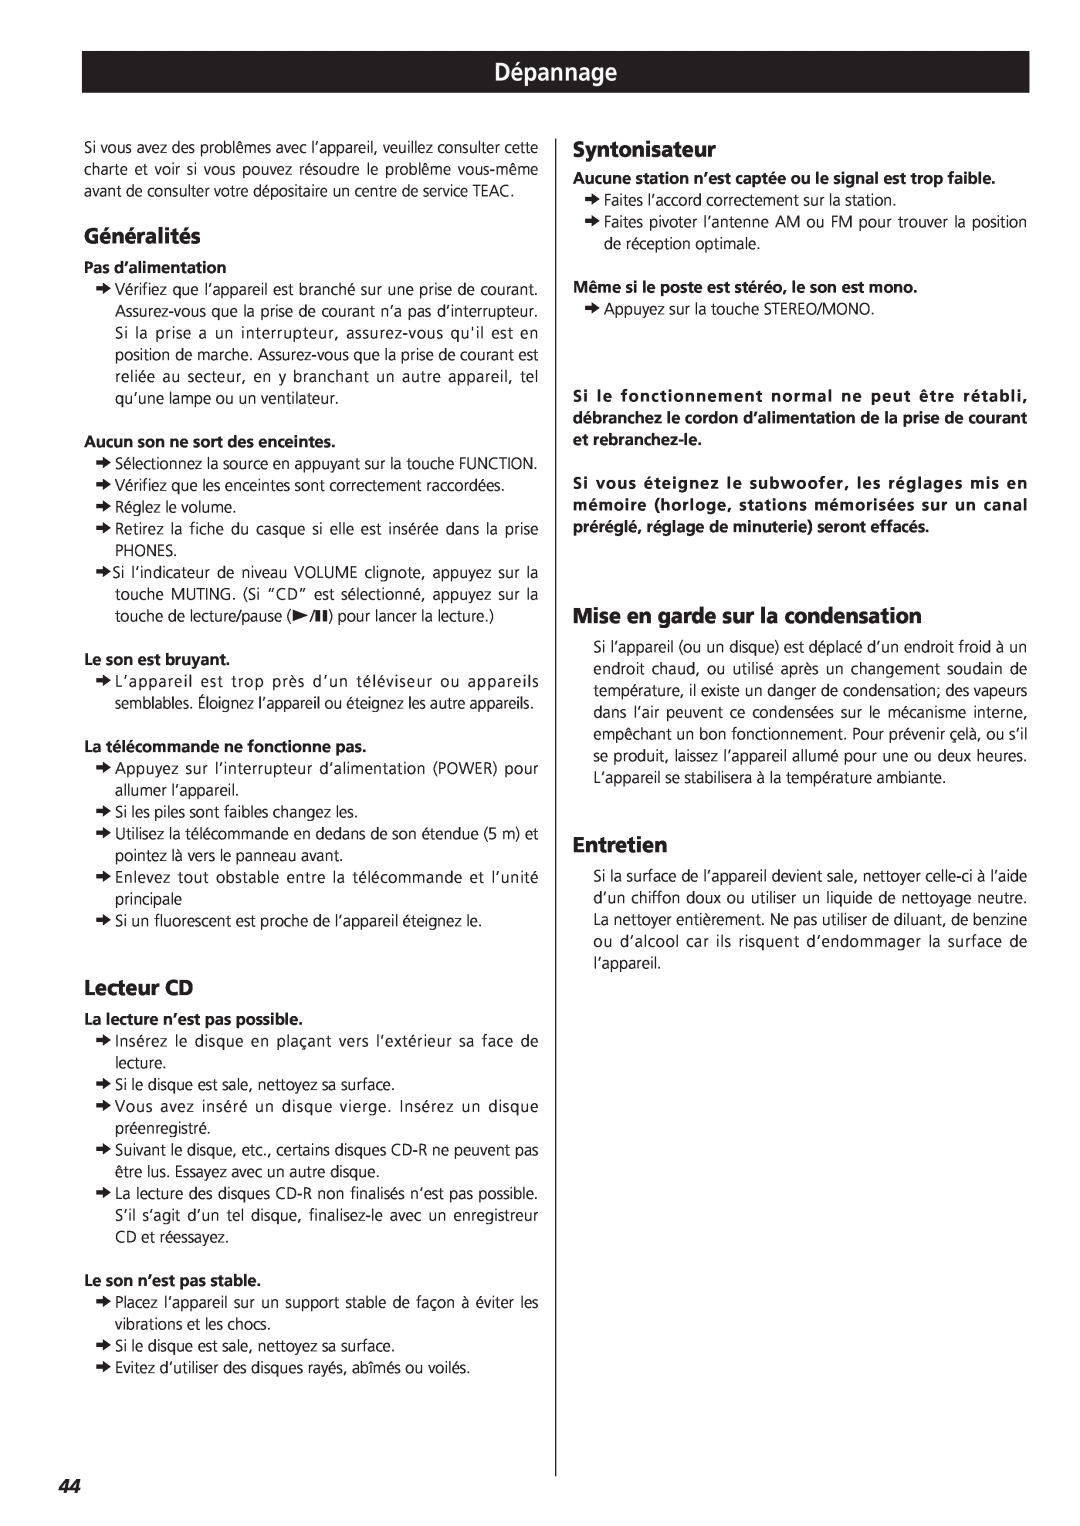 Teac MC-DX20 owner manual Dépannage, Généralités, Lecteur CD, Syntonisateur, Mise en garde sur la condensation, Entretien 